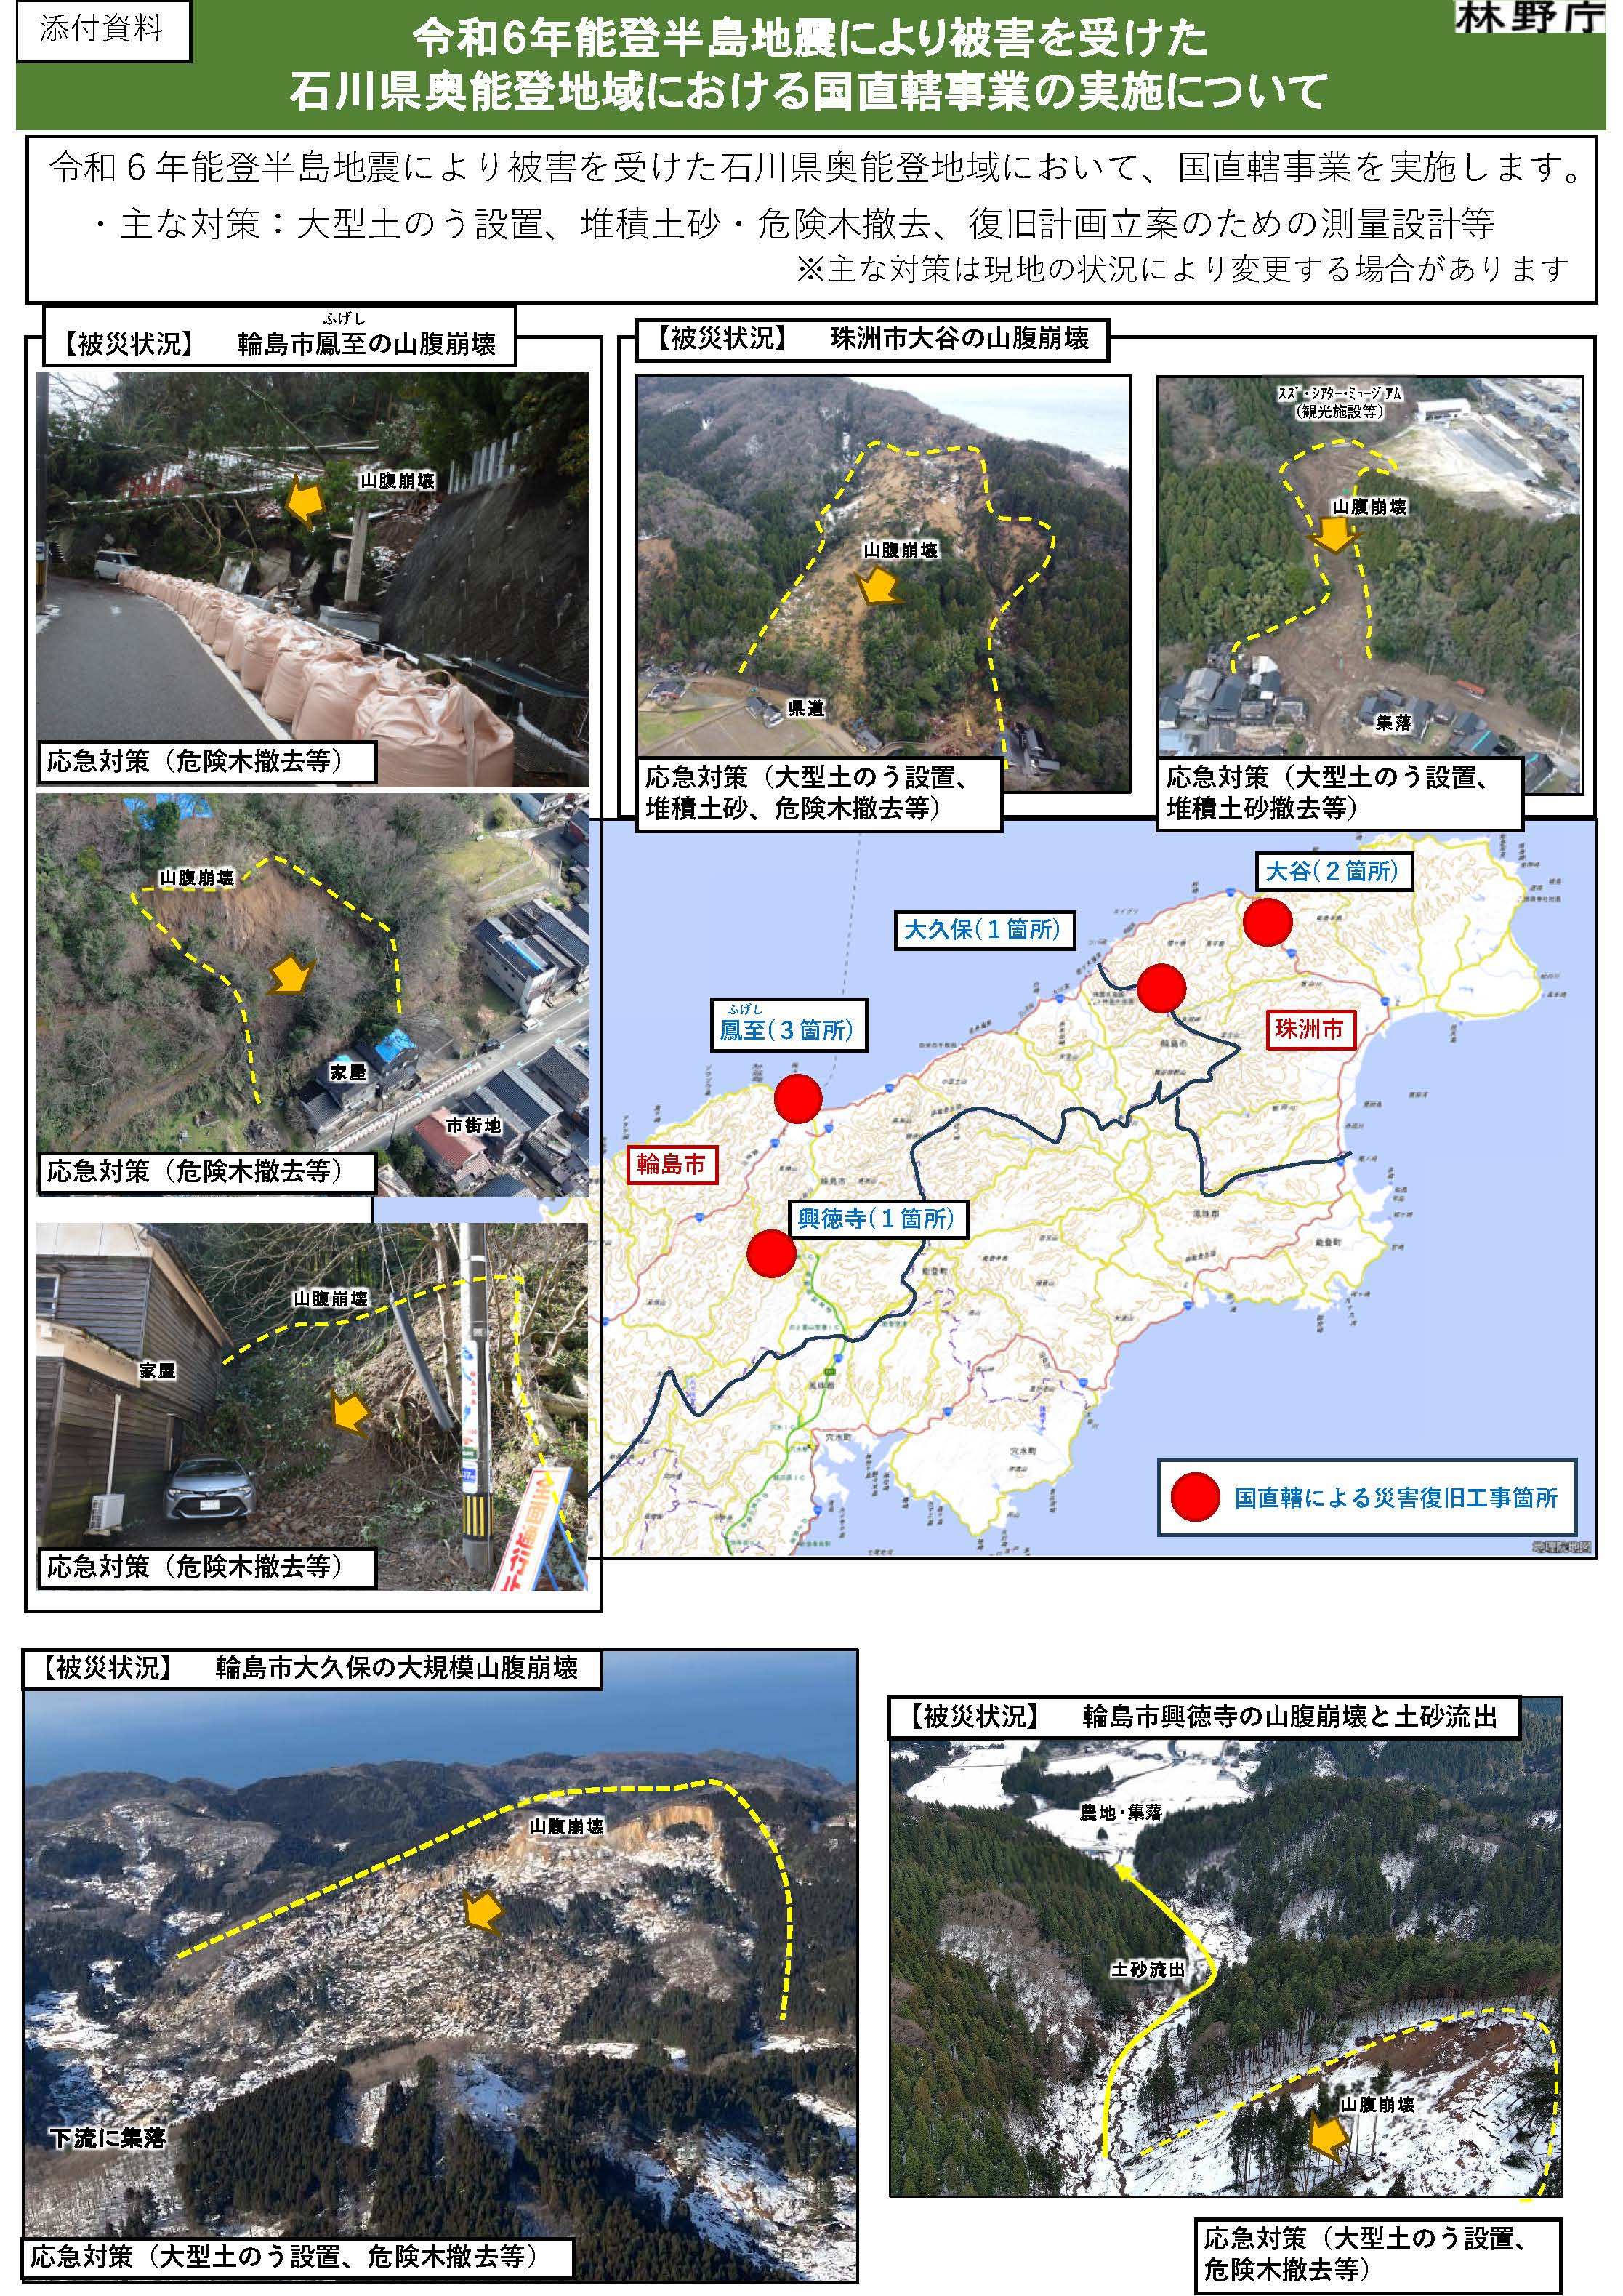 令和6年能登半島地震により被害を受けた石川県奥能登地域において国直轄事業を実施します